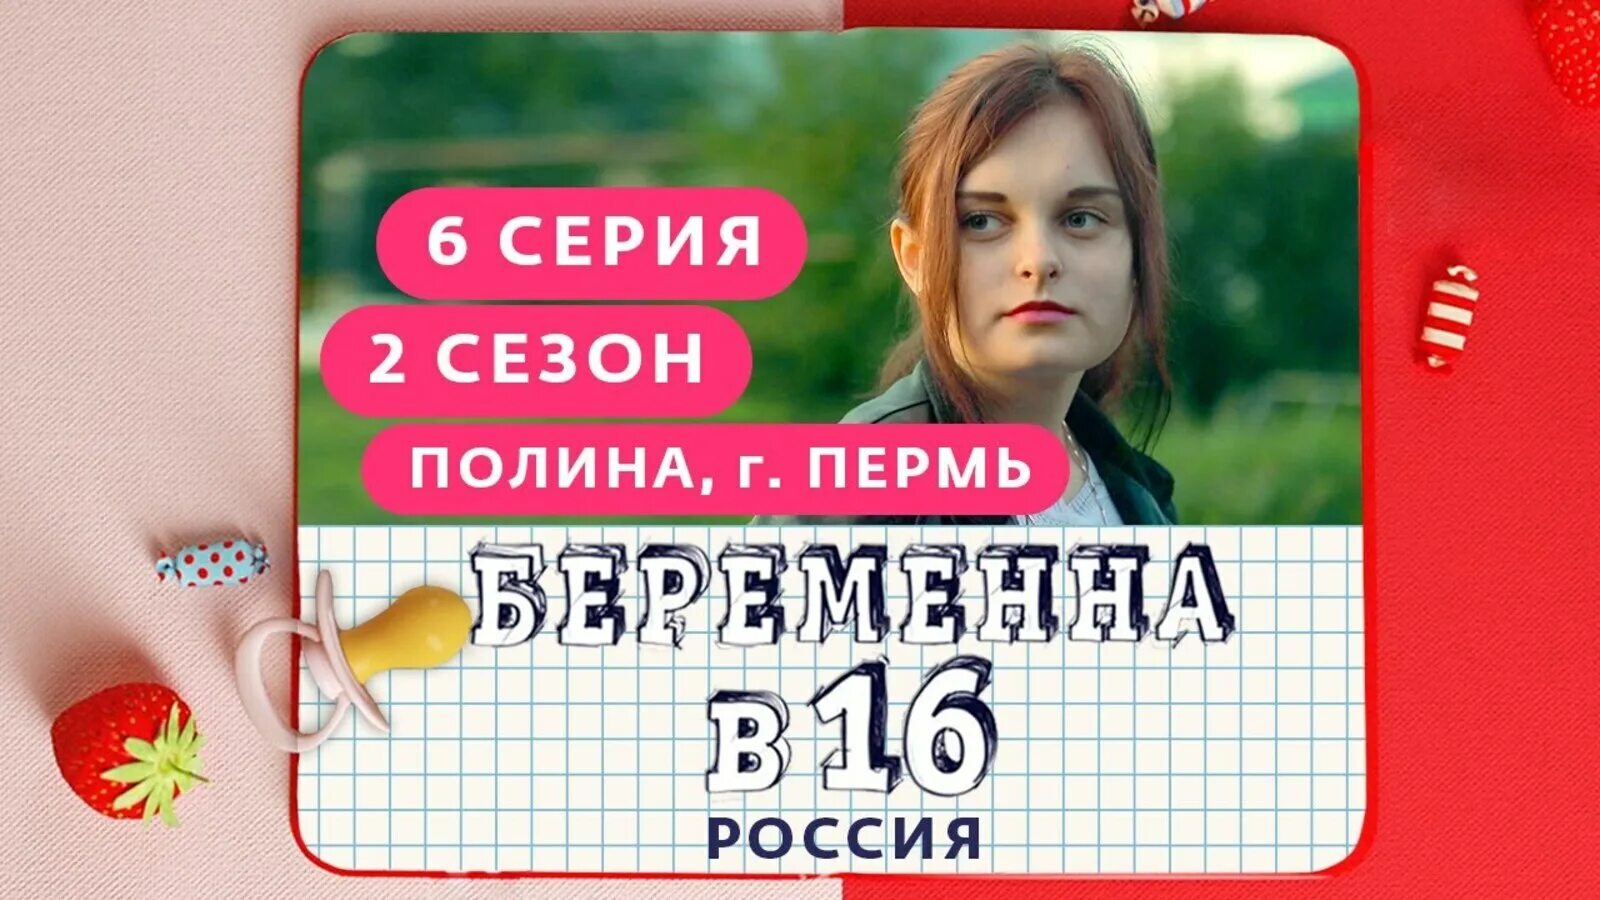 Беременна в 16 русская версия.